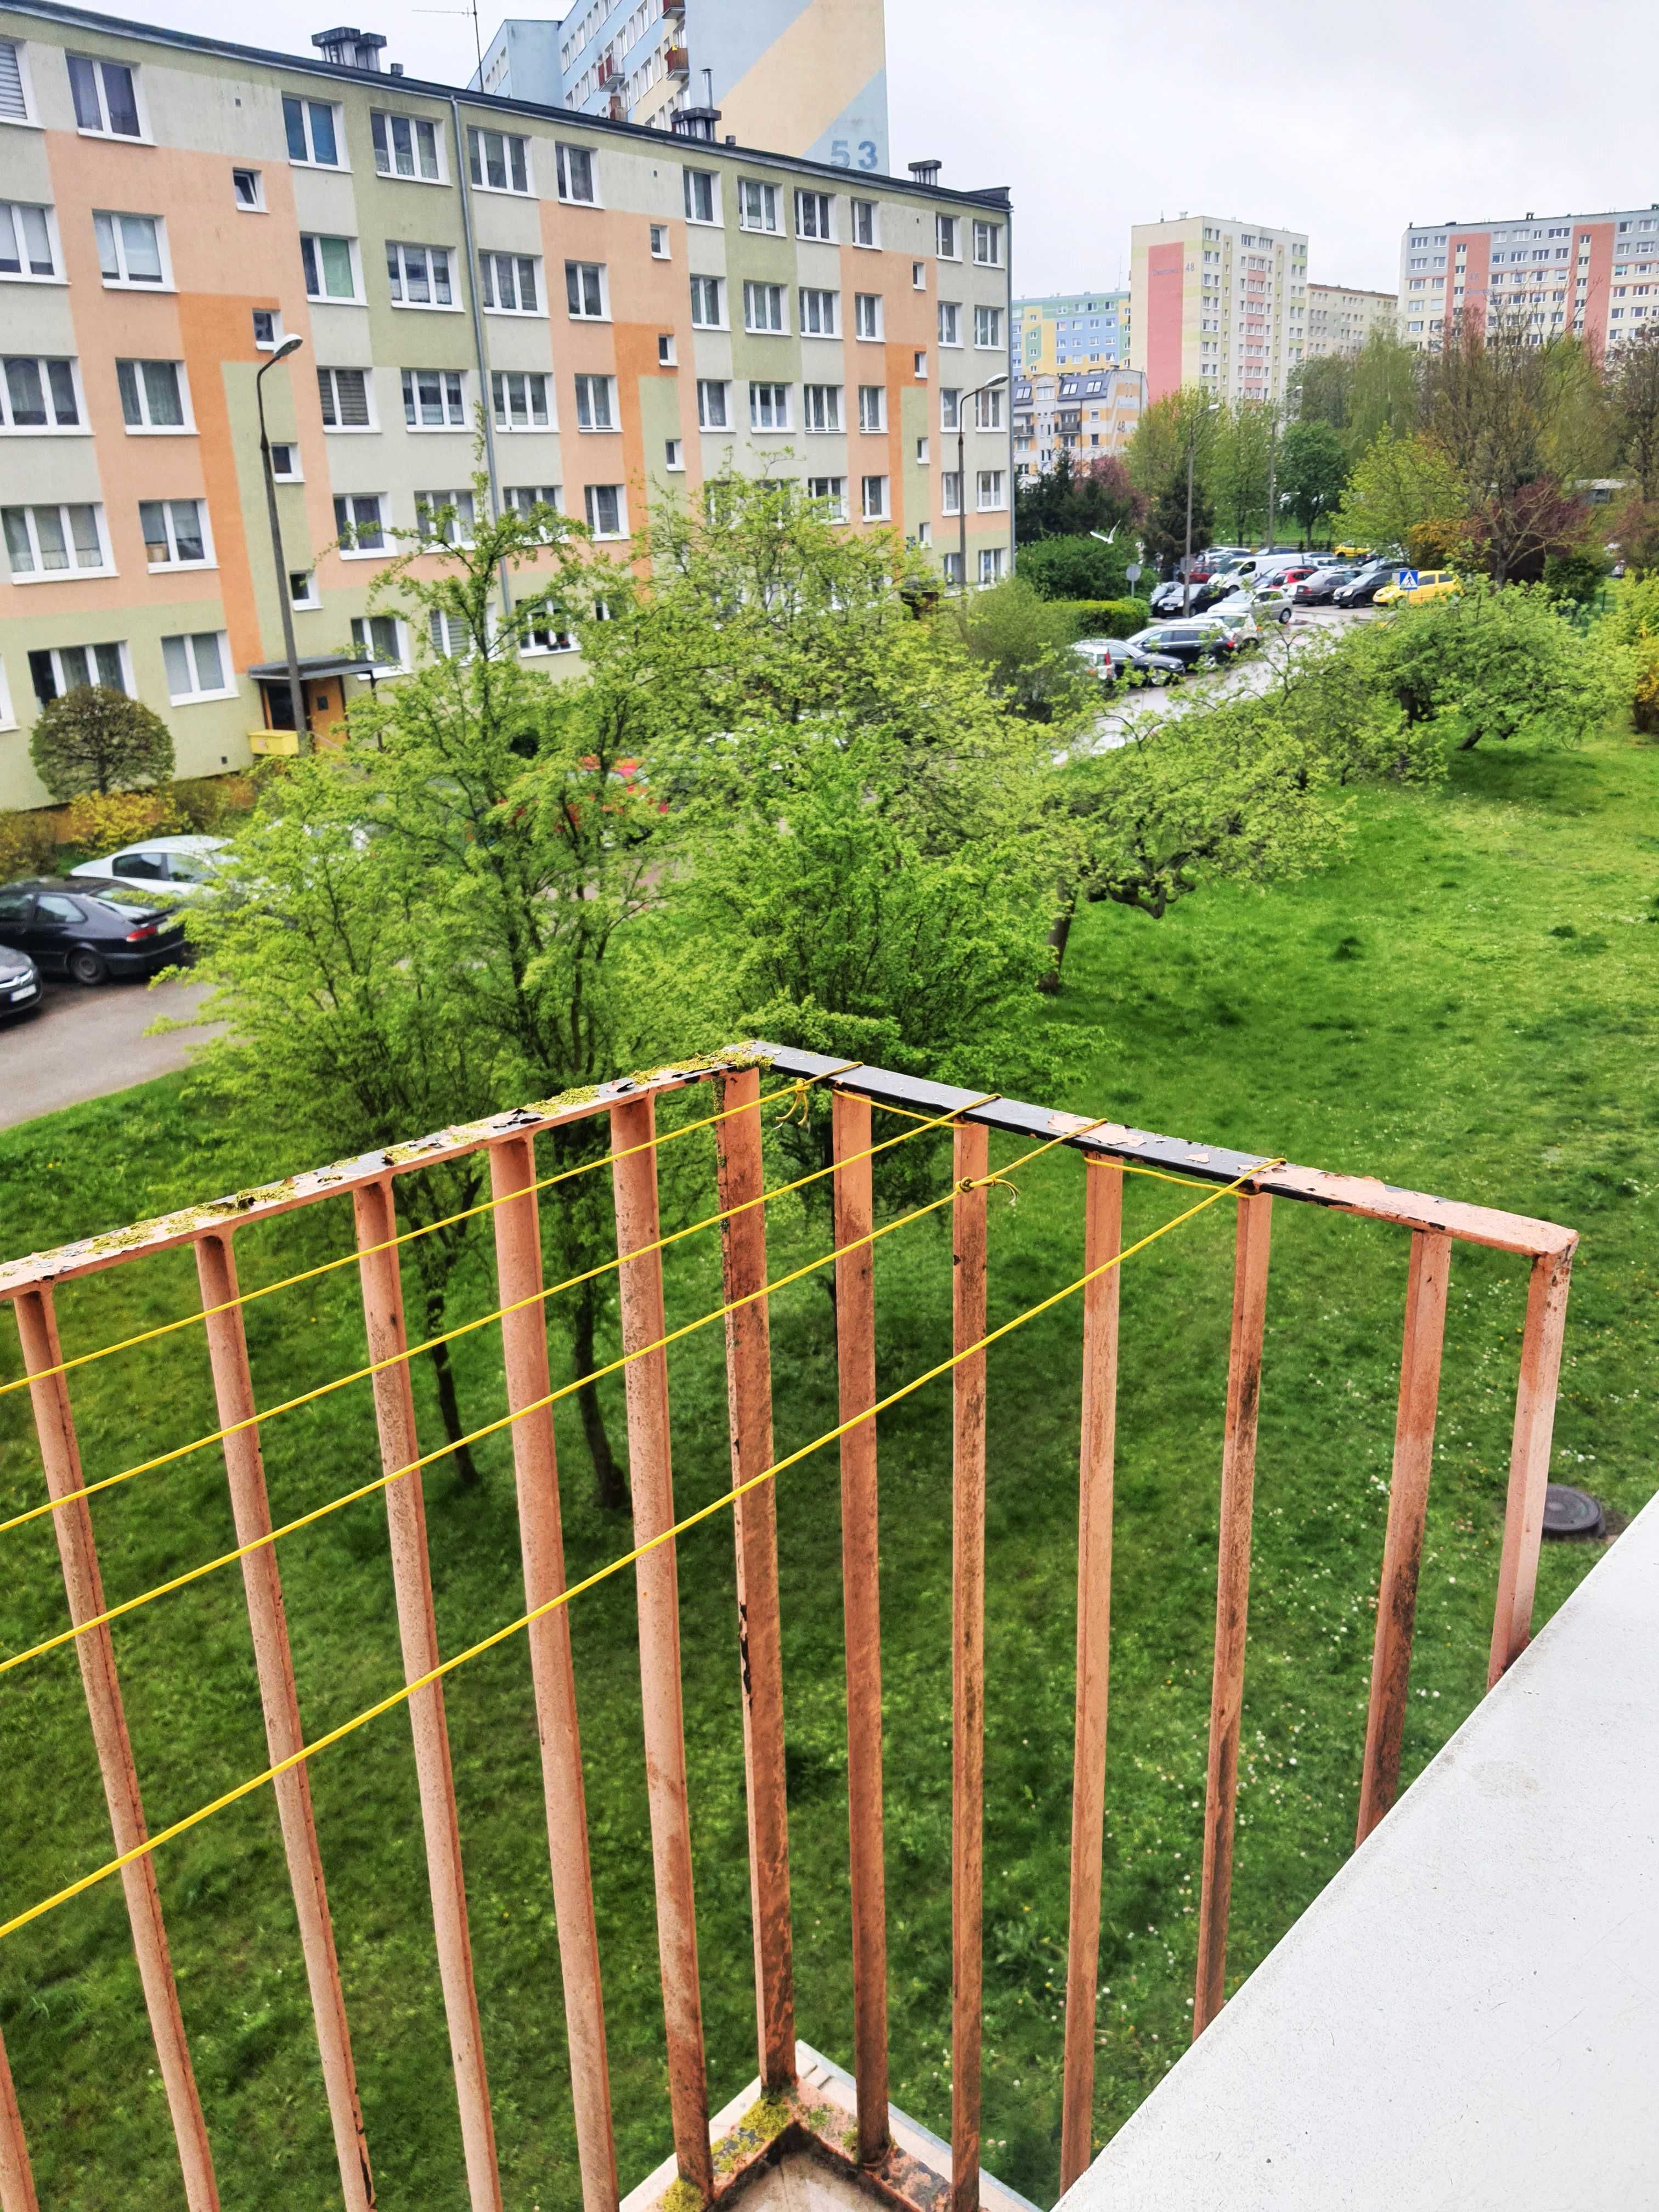 Mieszkanie 3 pokojowe, ul. Dworcowa, blisko centrum.